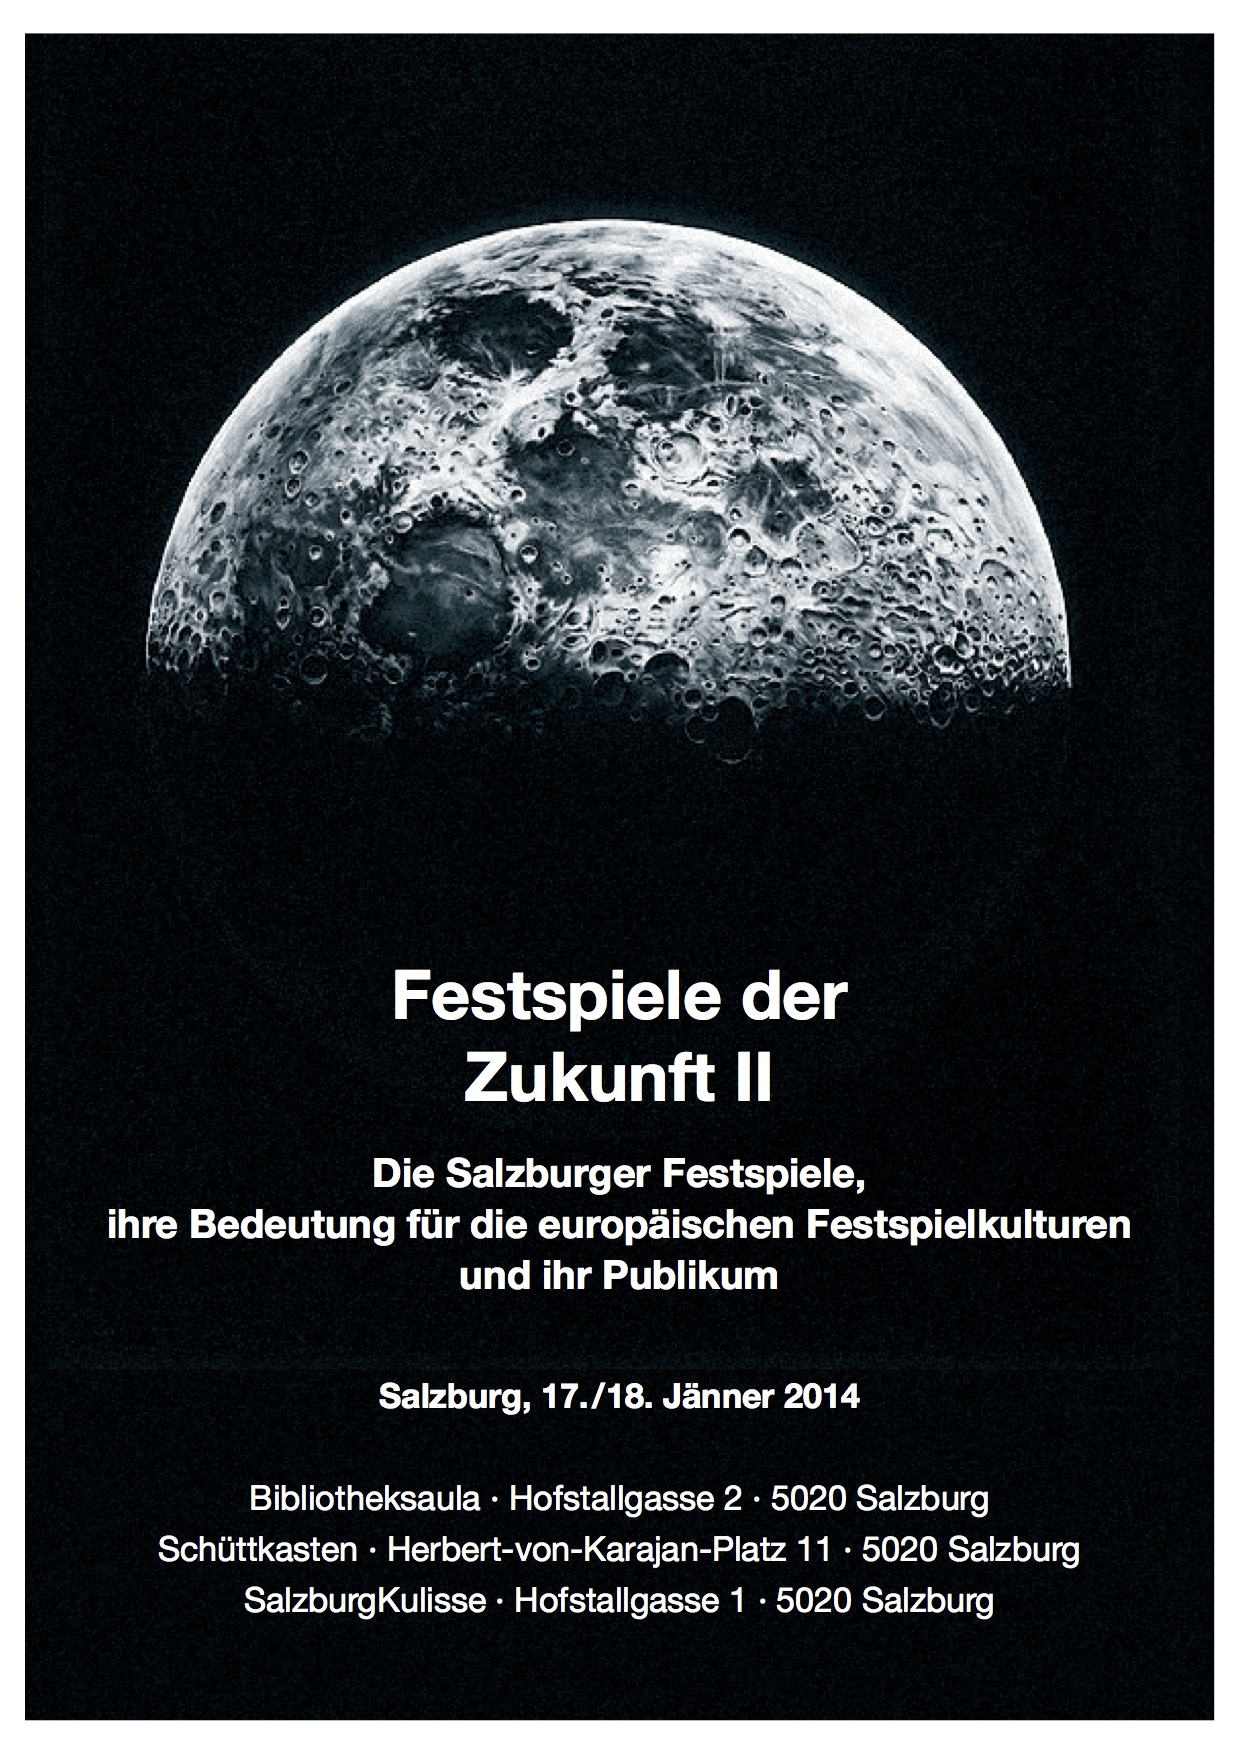 FESTSPIELSYMPOSION: Festspiele der Zukunft II, Bild: Salzburg, 17./18.01.2014..